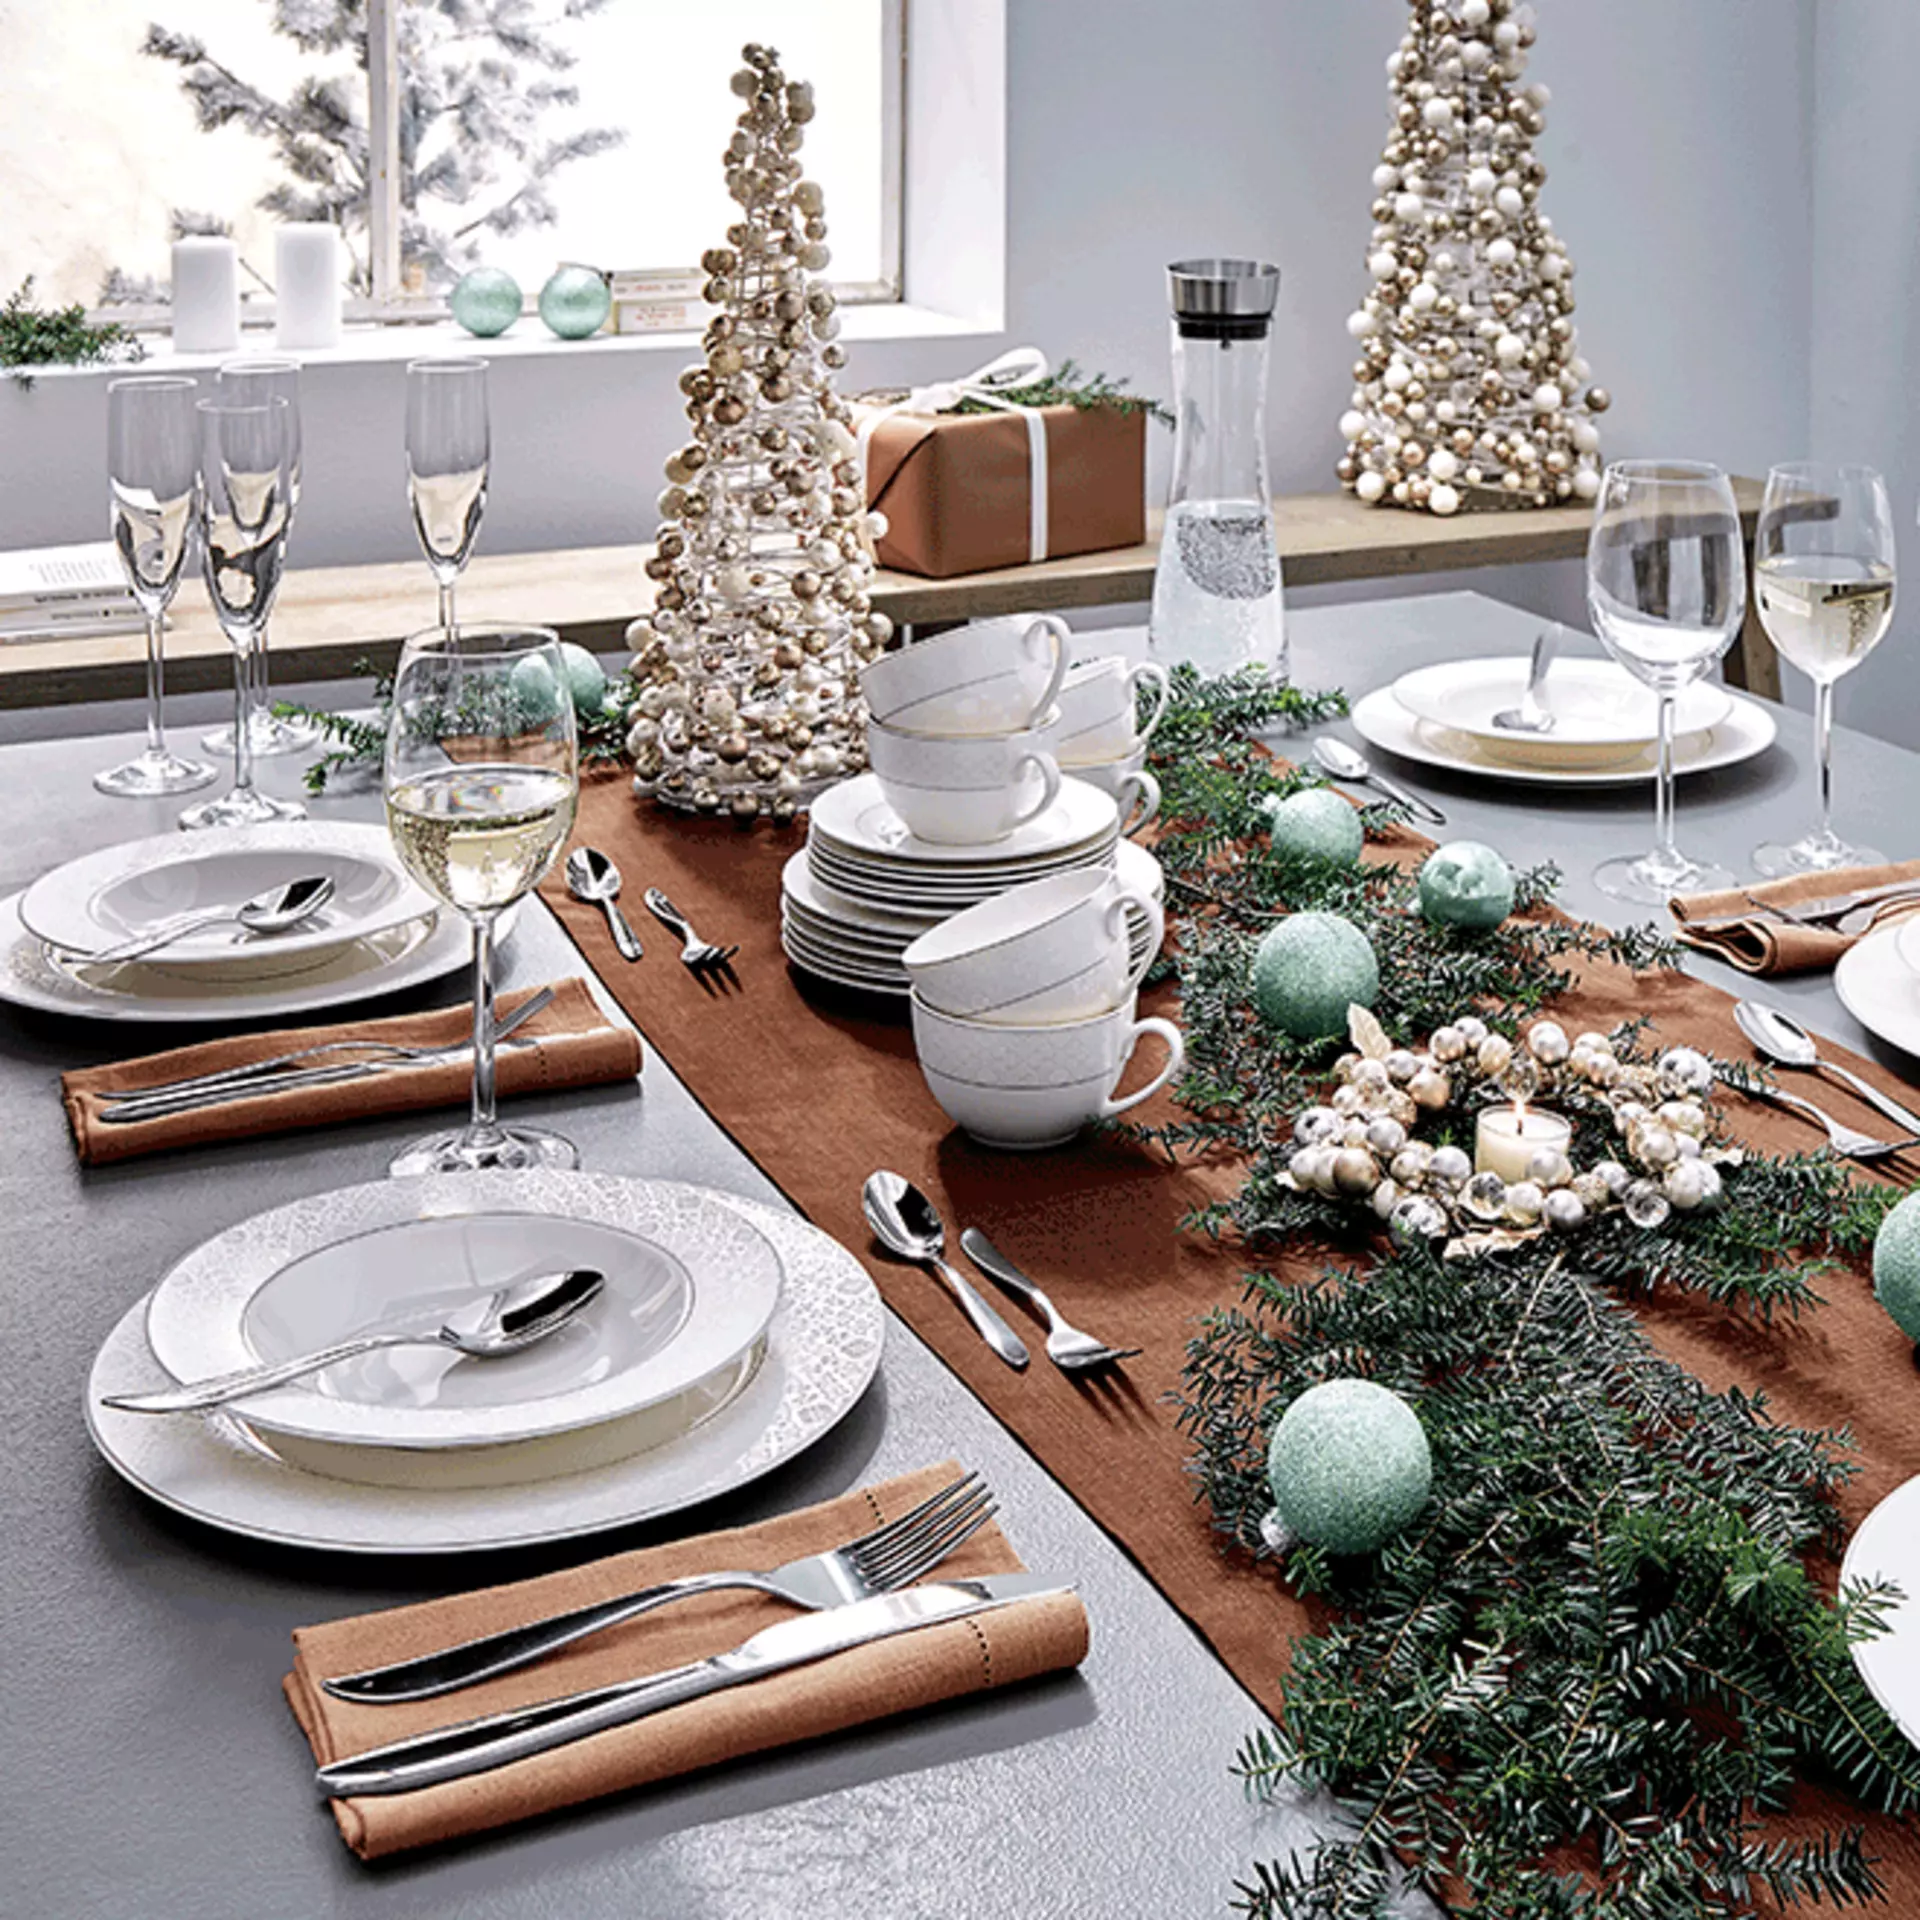 Der Tisch ist mit Weihnachtsdekorationen beschmückt